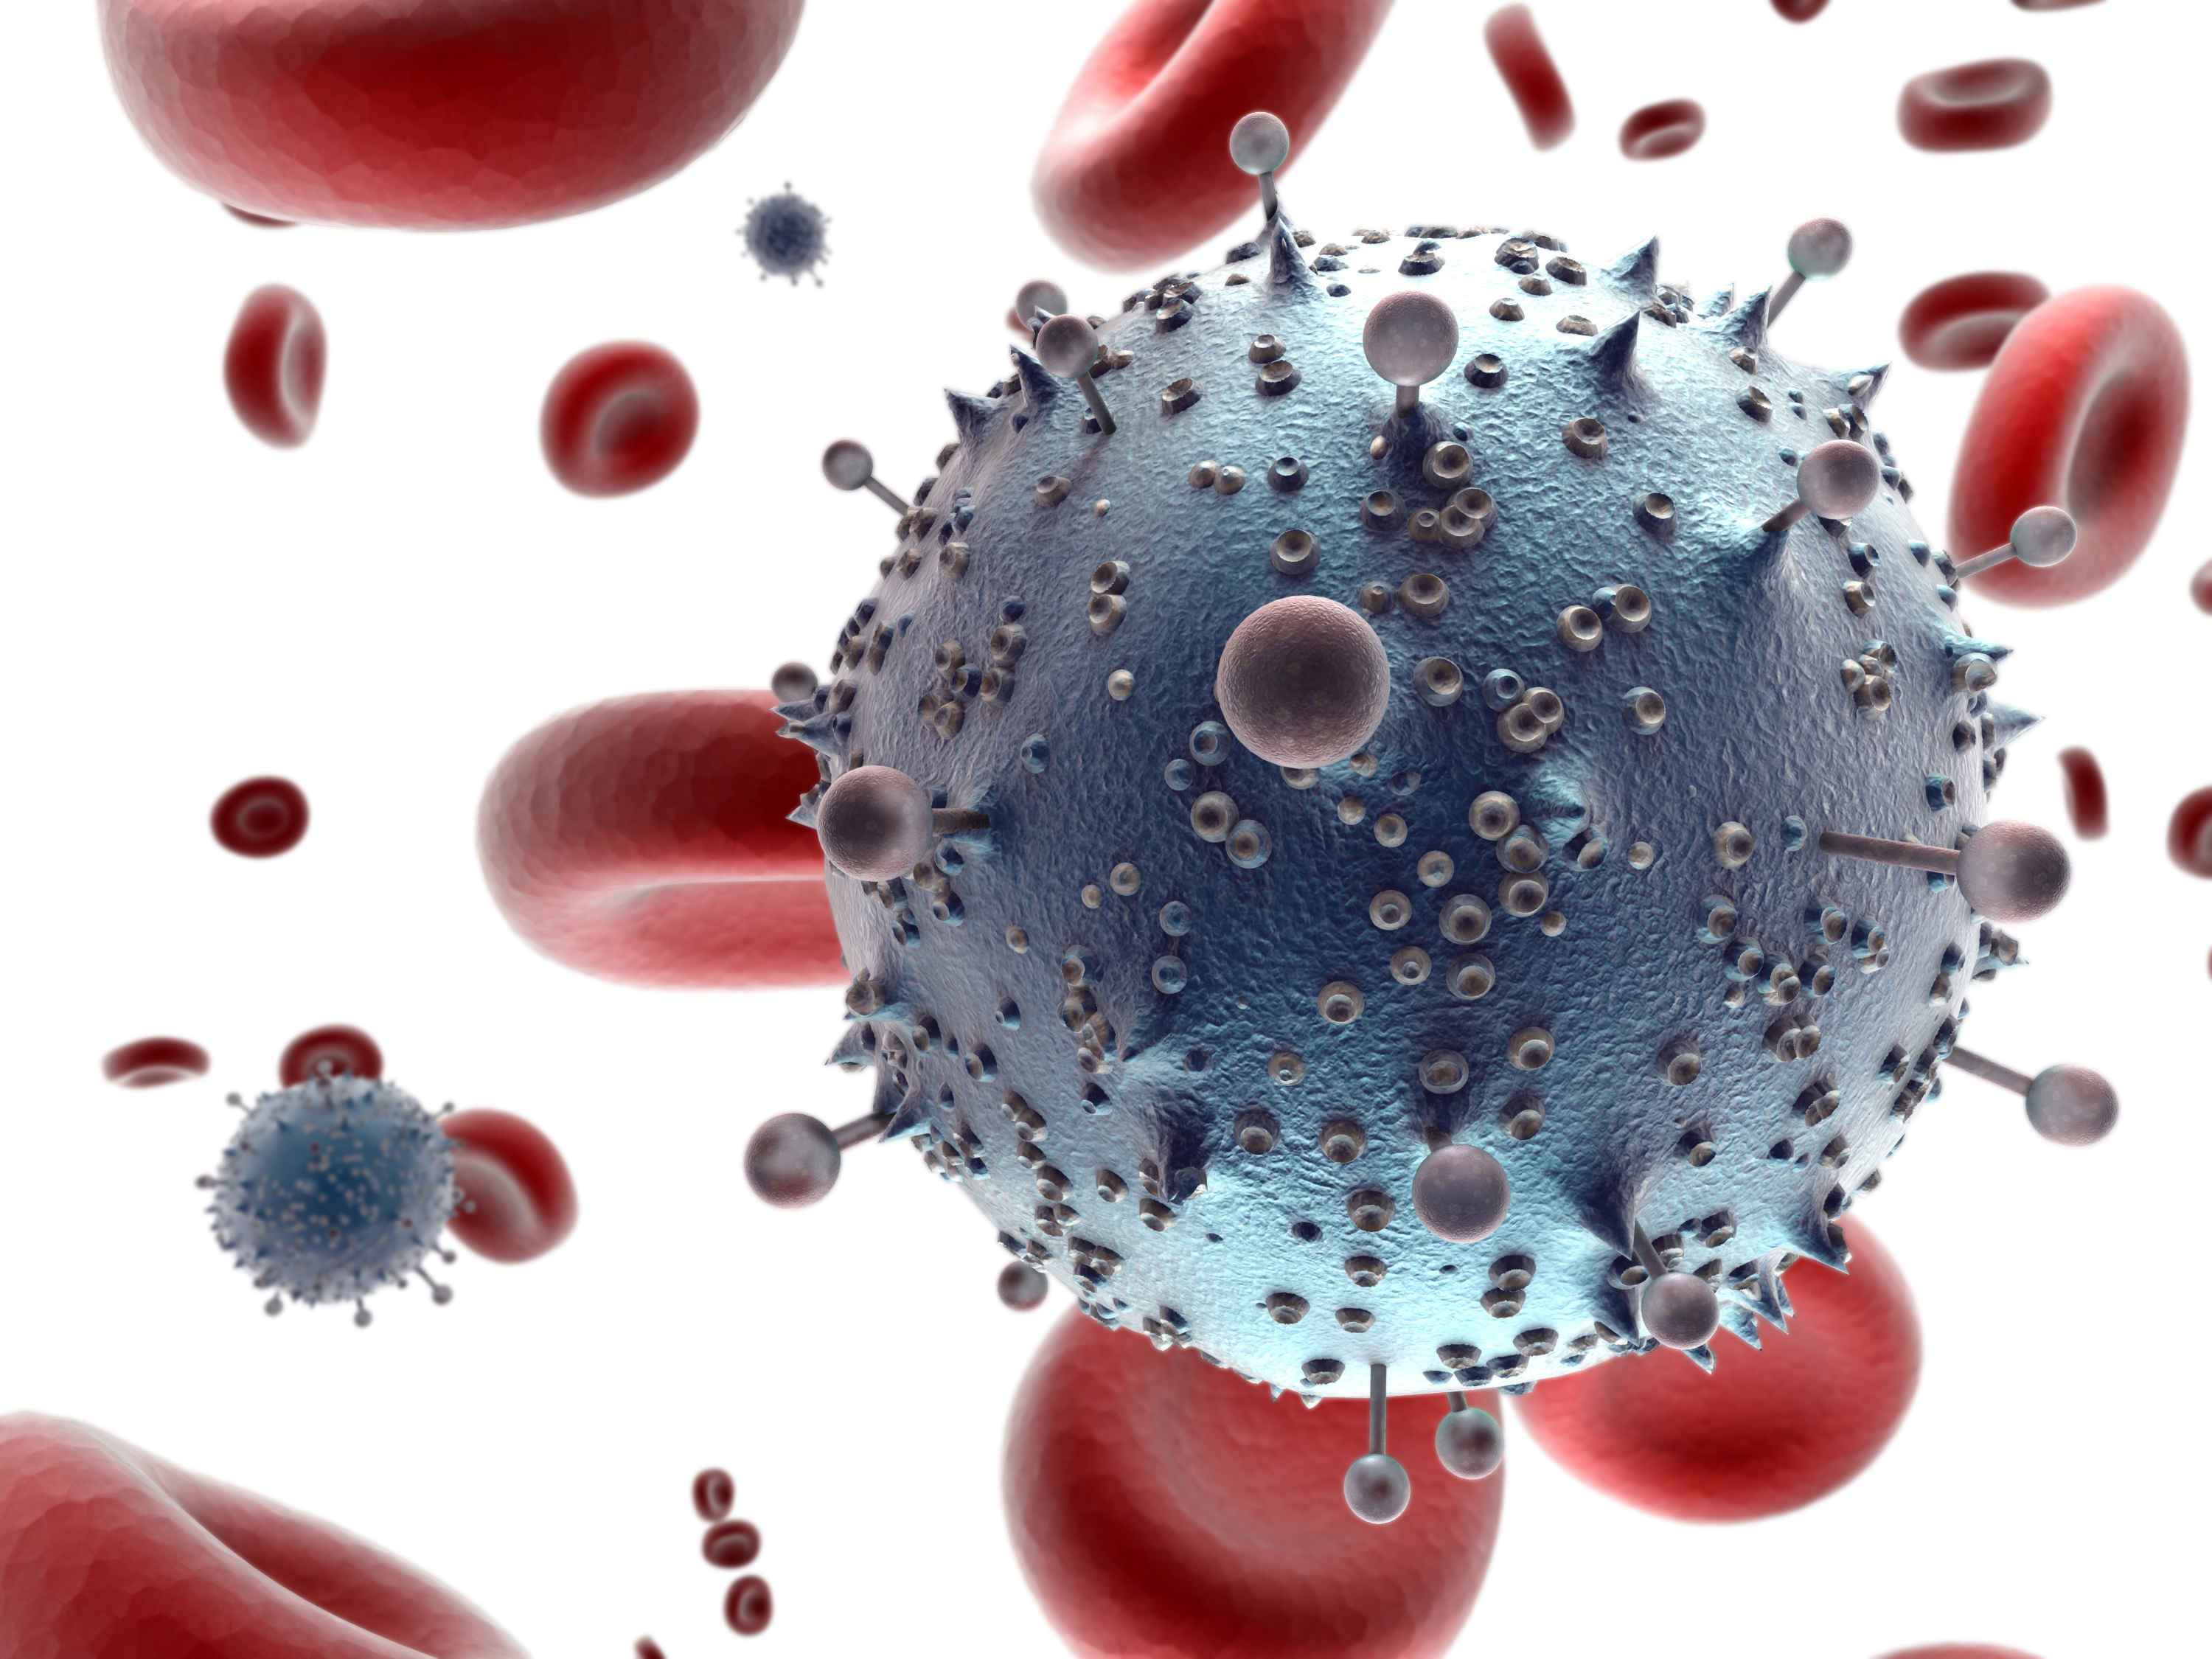 Ανακαλύφθηκε νέα κρυψώνα του ιού HIV στους λεμφαδένες